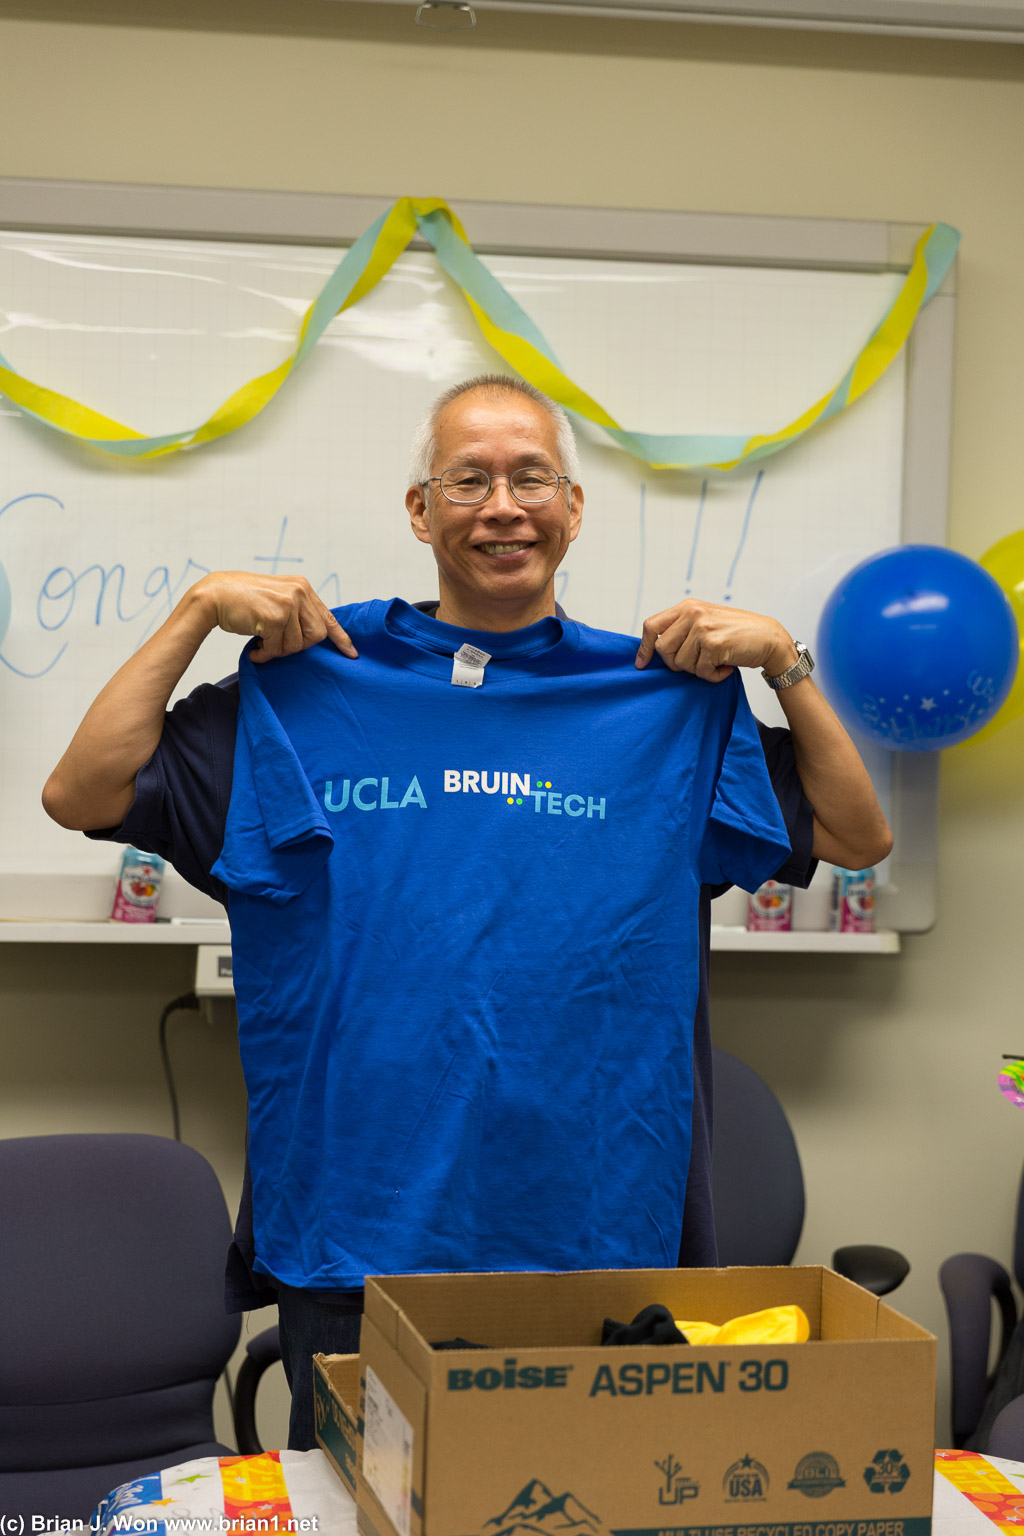 UCLA BruinTech!